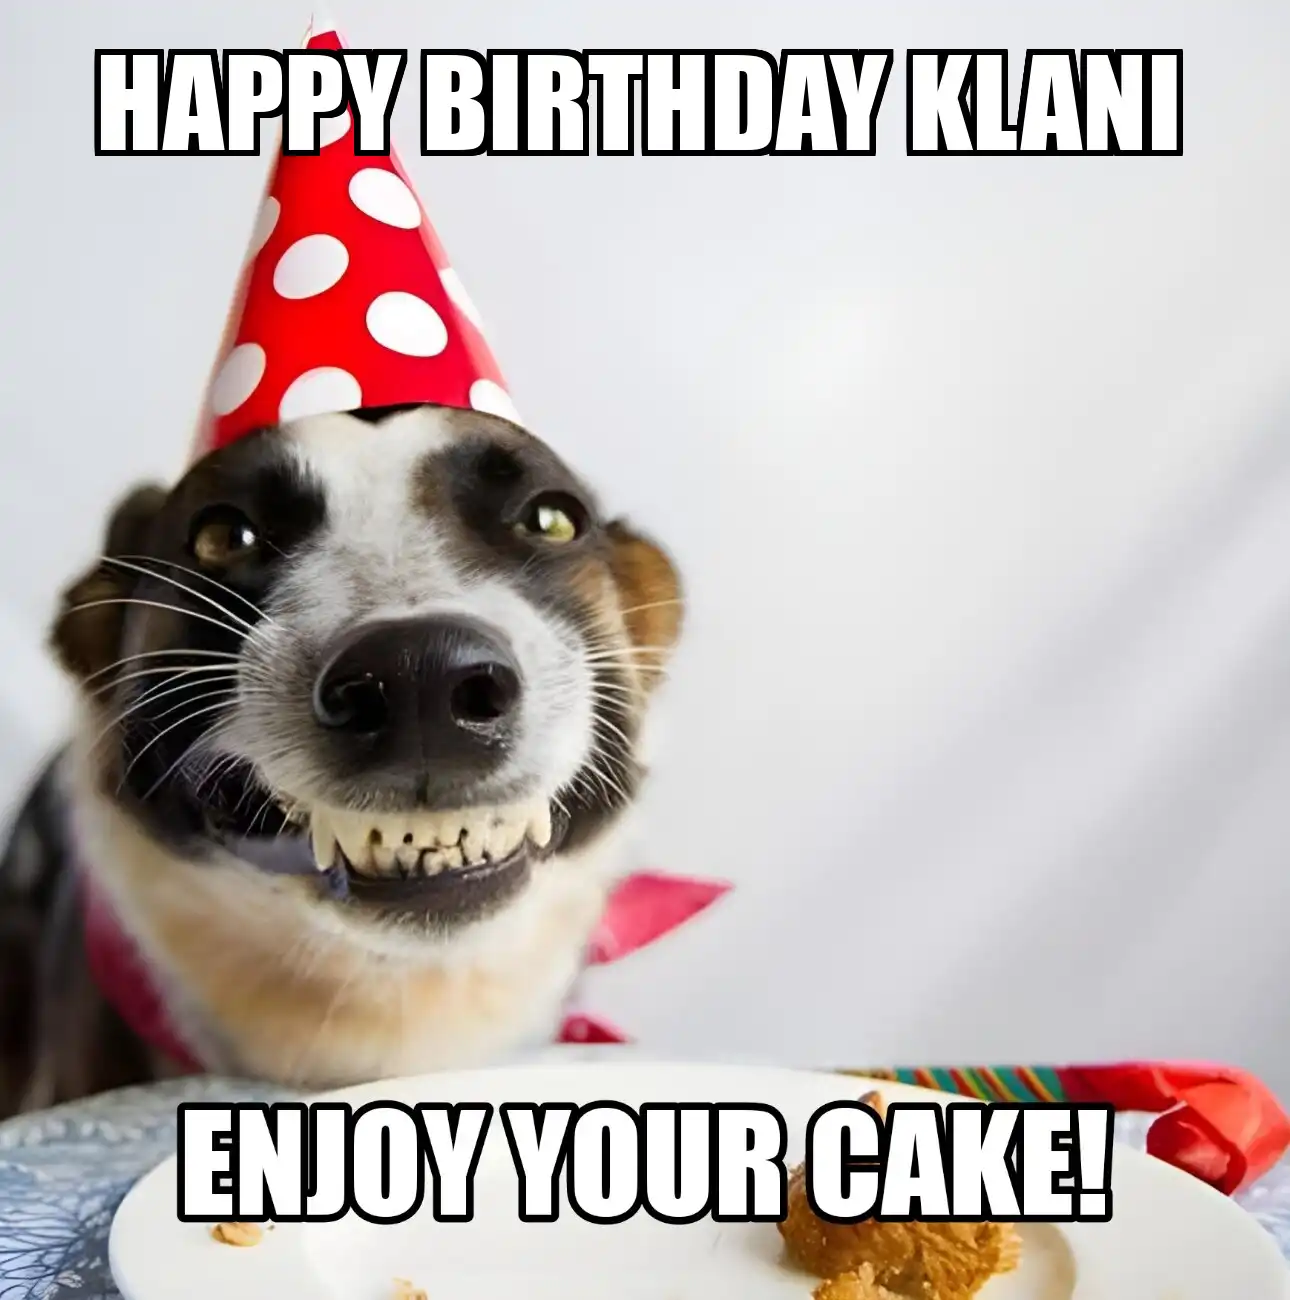 Happy Birthday Klani Enjoy Your Cake Dog Meme